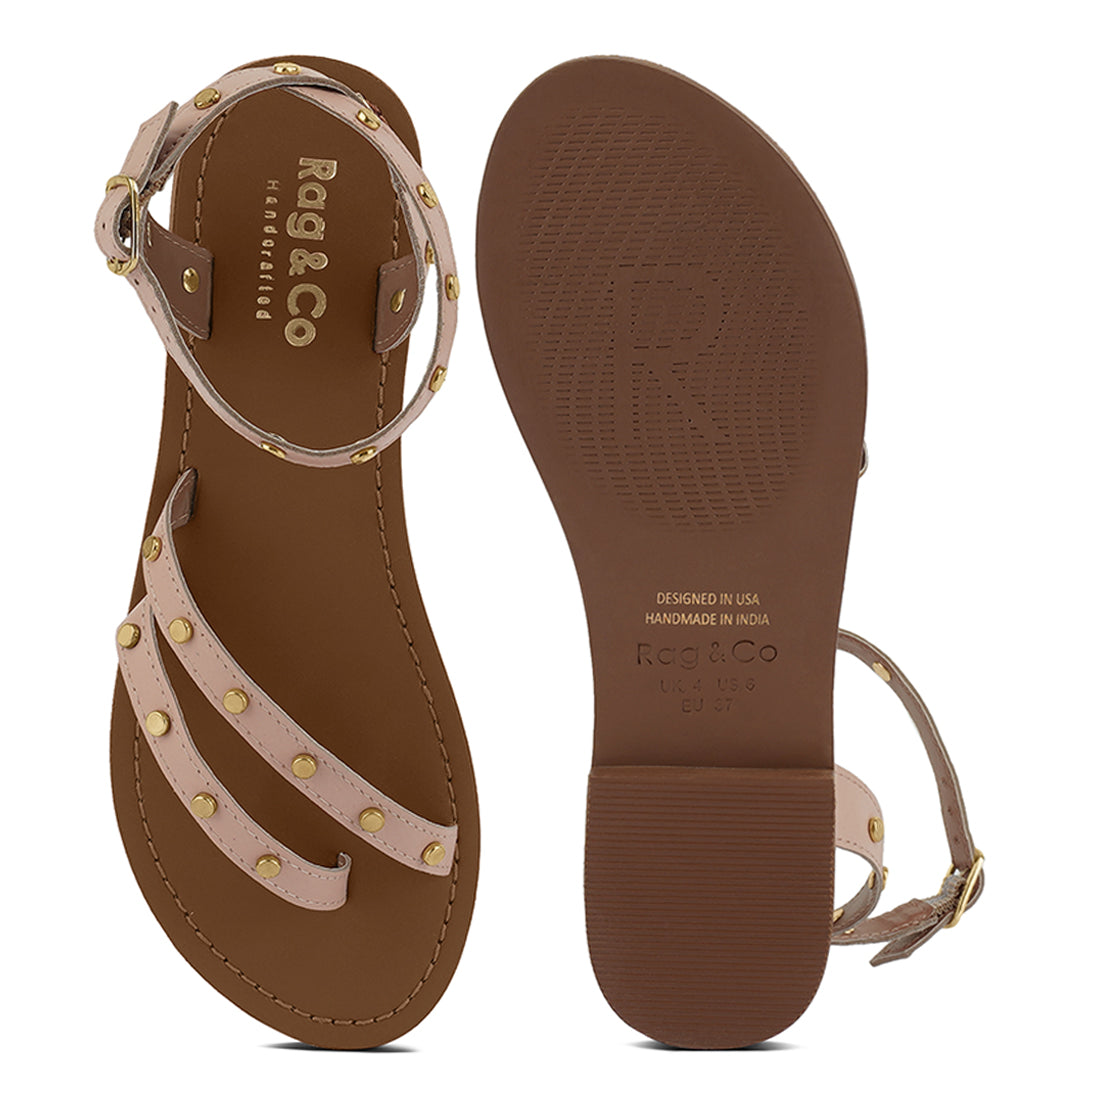 oprah studs embellished flat sandals#color_beige